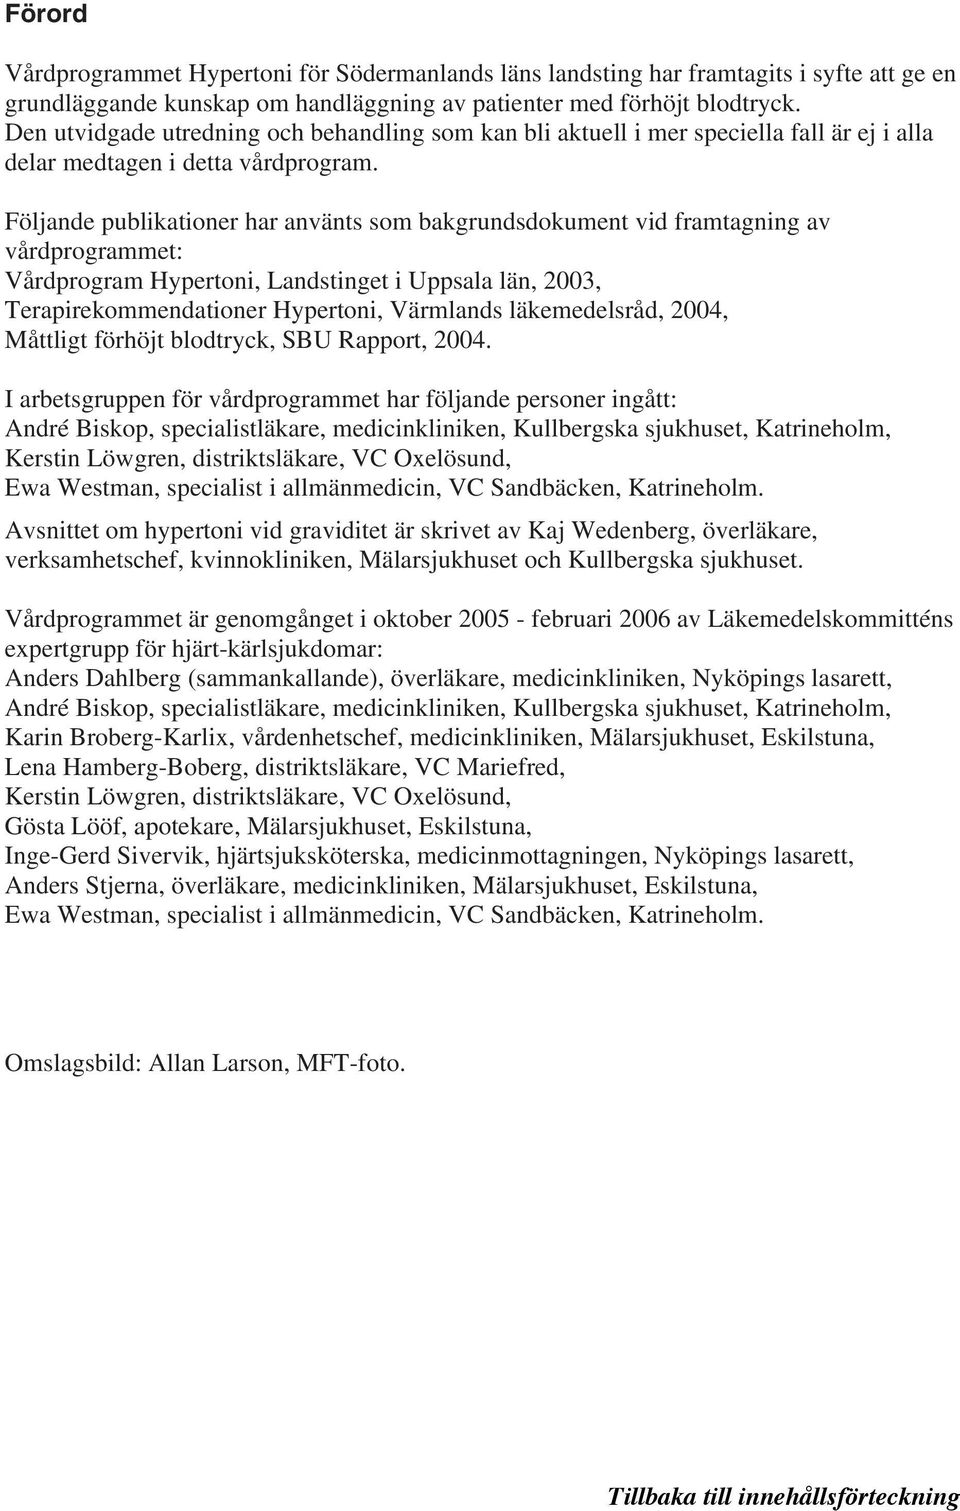 Följande publikationer har använts som bakgrundsdokument vid framtagning av vårdprogrammet: Vårdprogram Hypertoni, Landstinget i Uppsala län, 2003, Terapirekommendationer Hypertoni, Värmlands